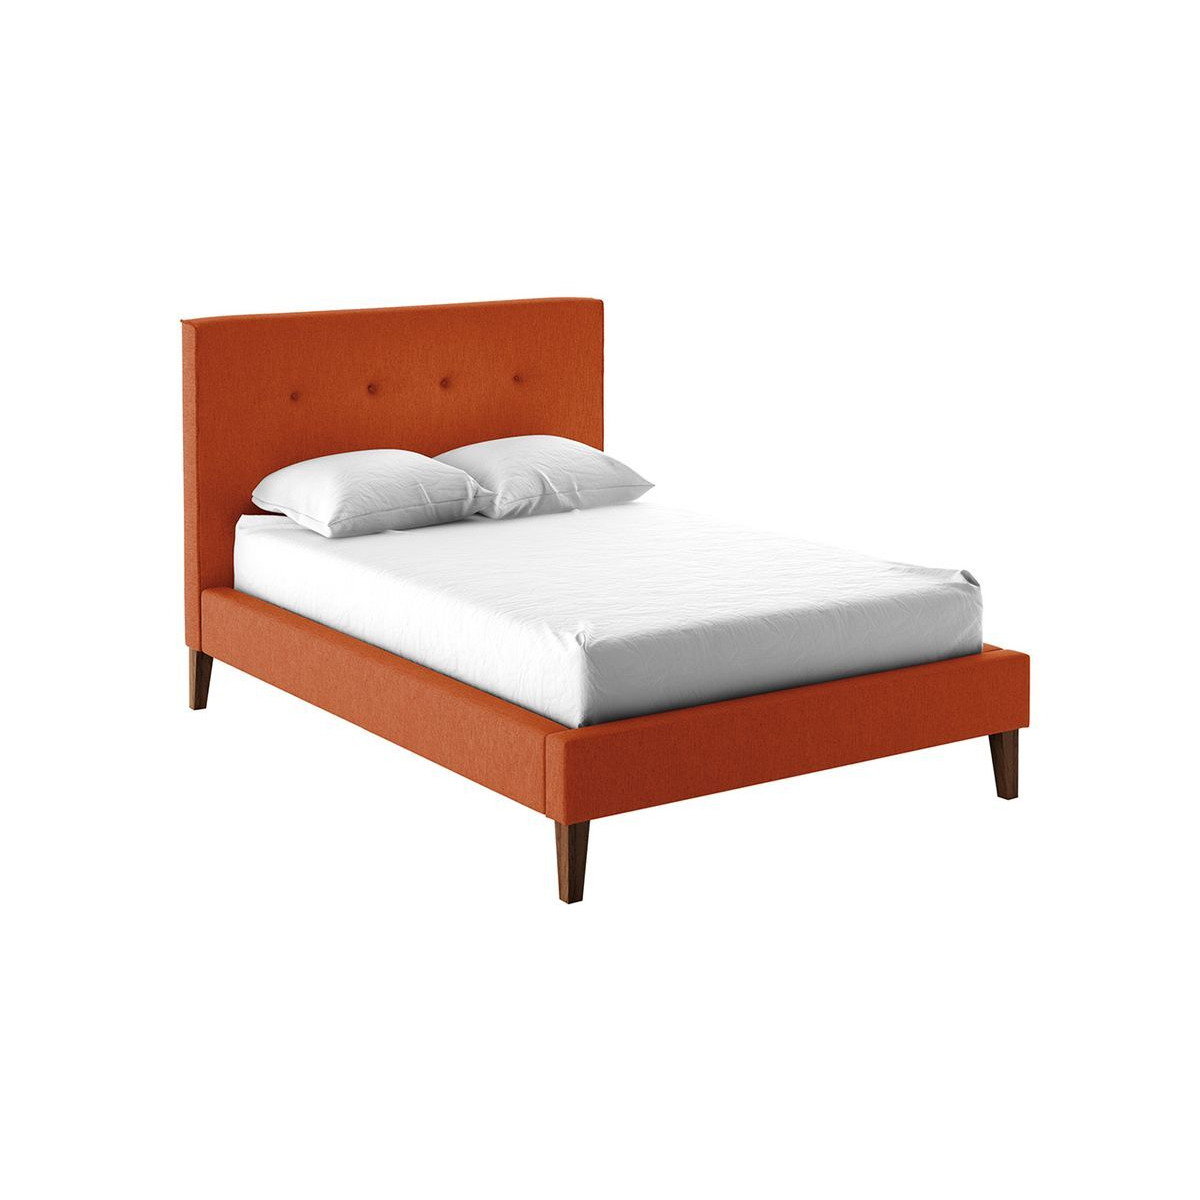 Inspire Upholstered Bed Frame, orange - image 1